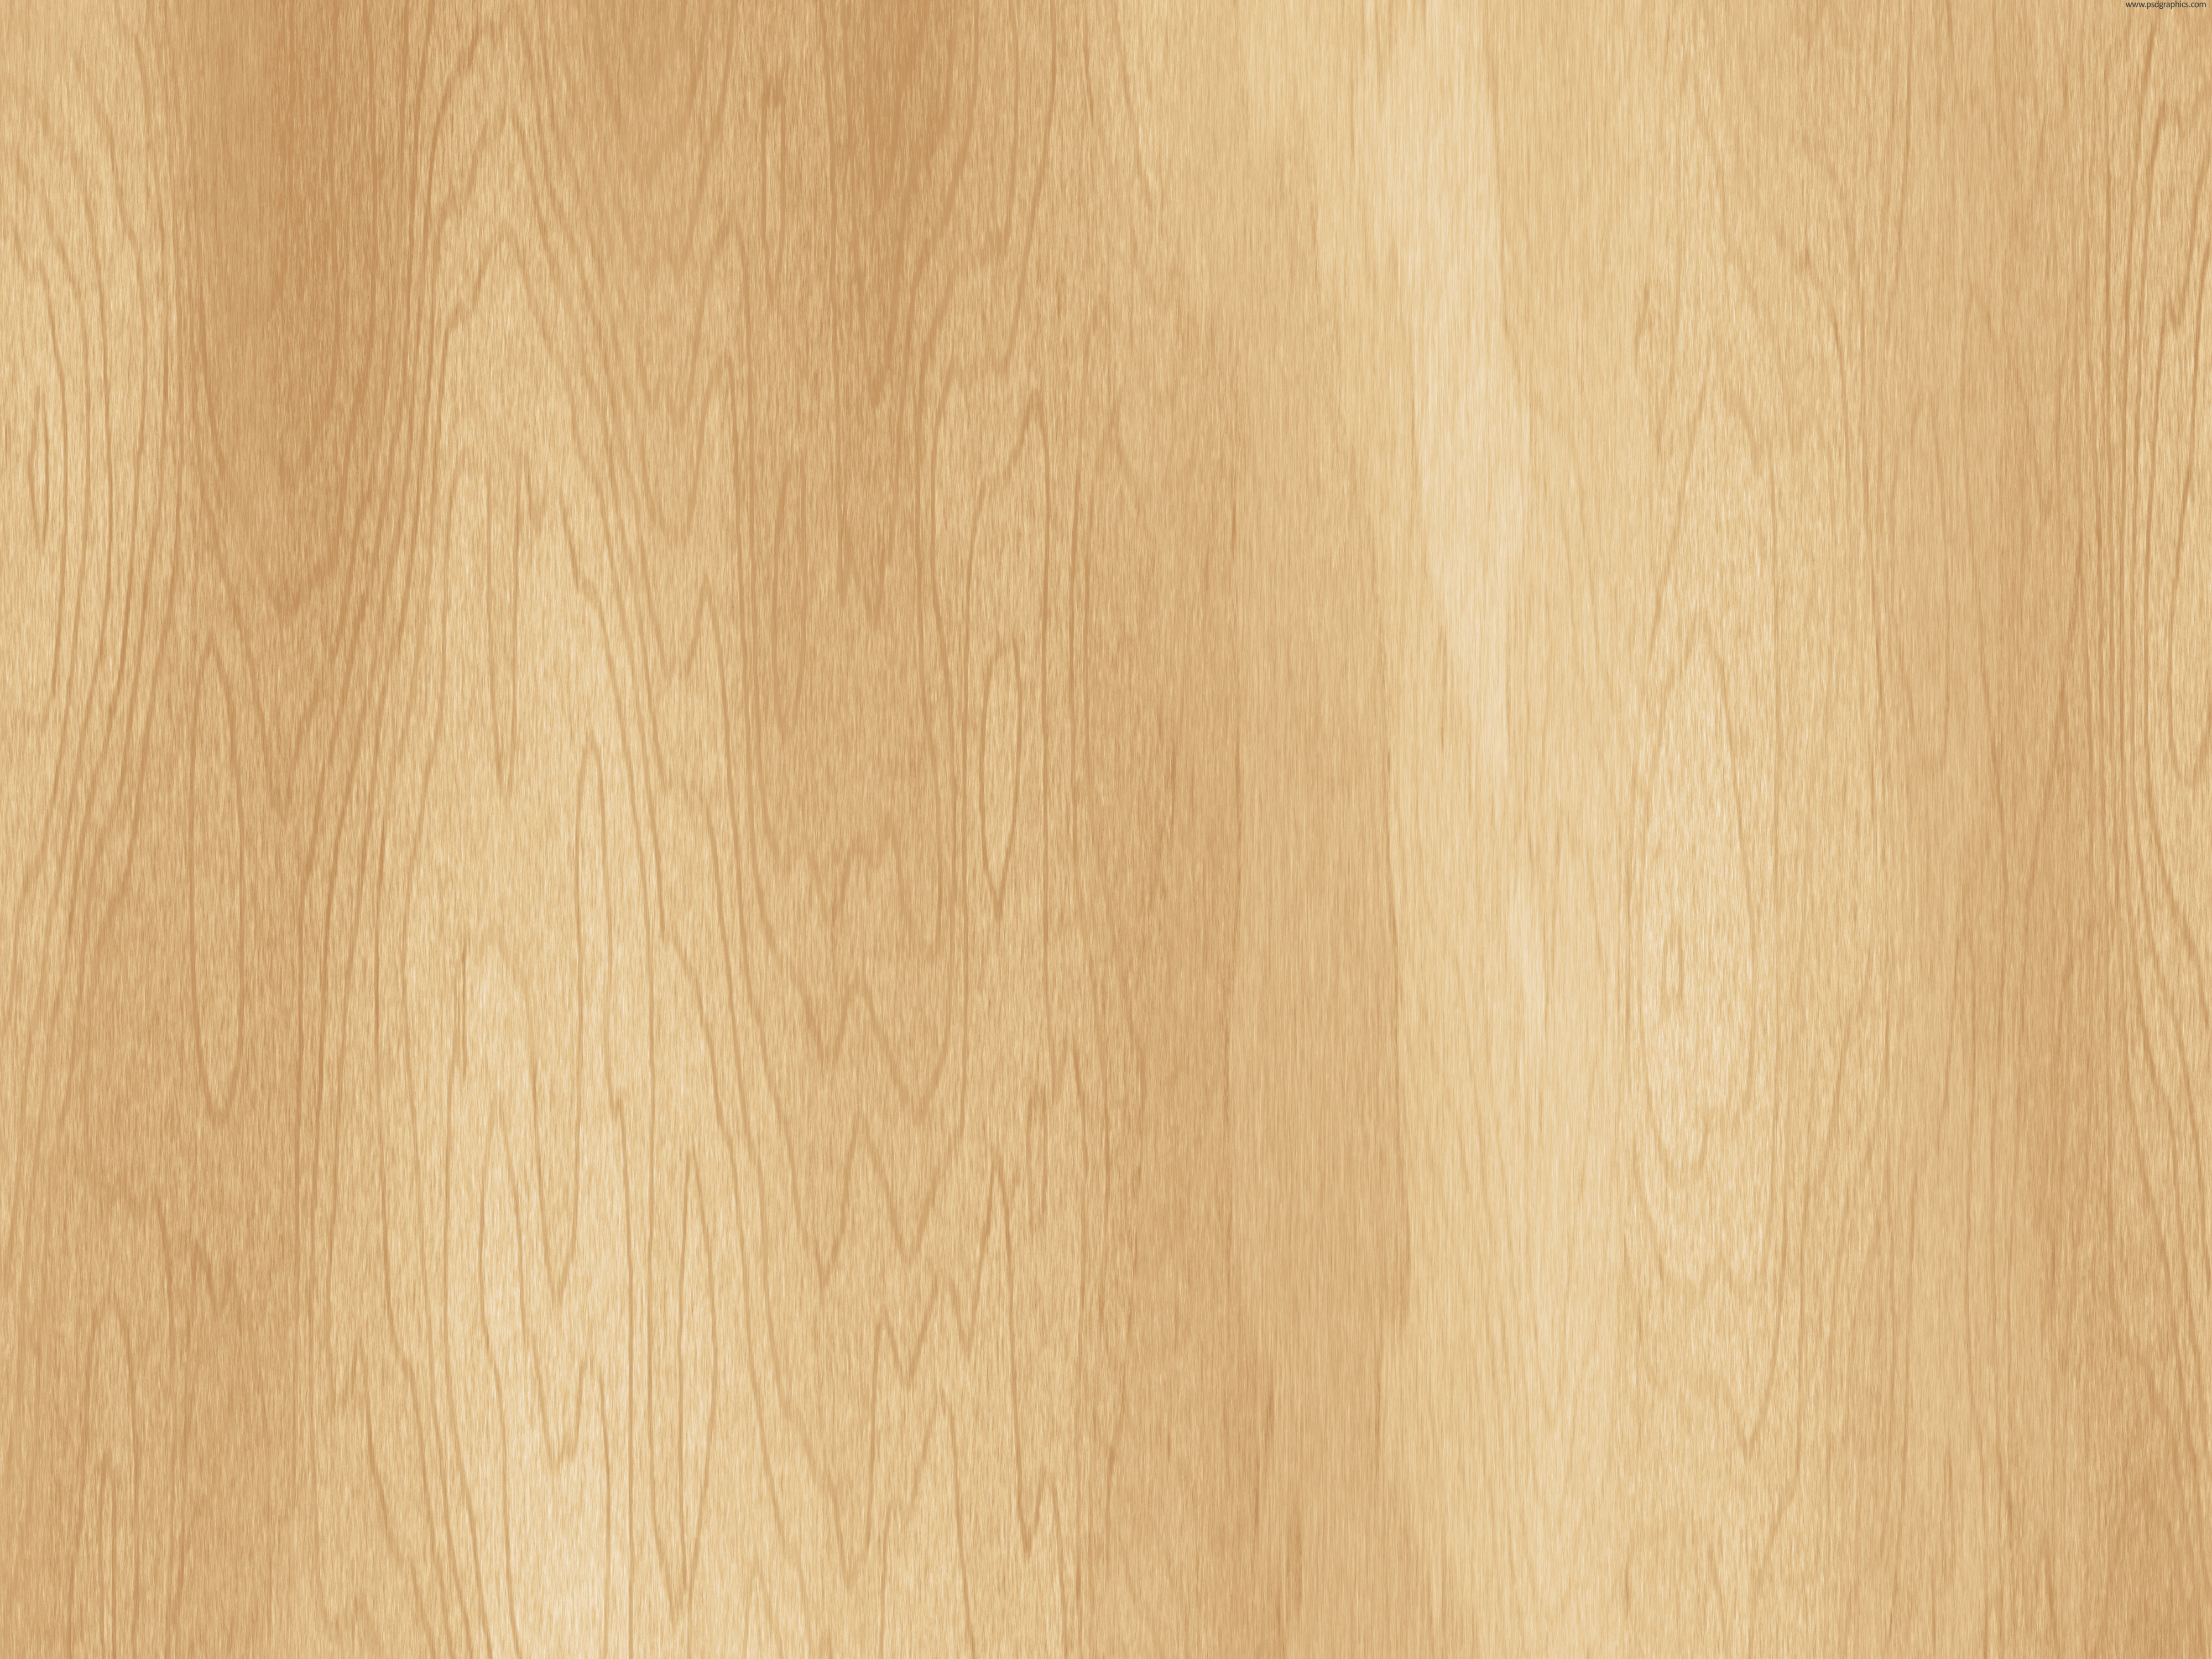 Cherry Wood Texture Wooden Floor Brown Pattern